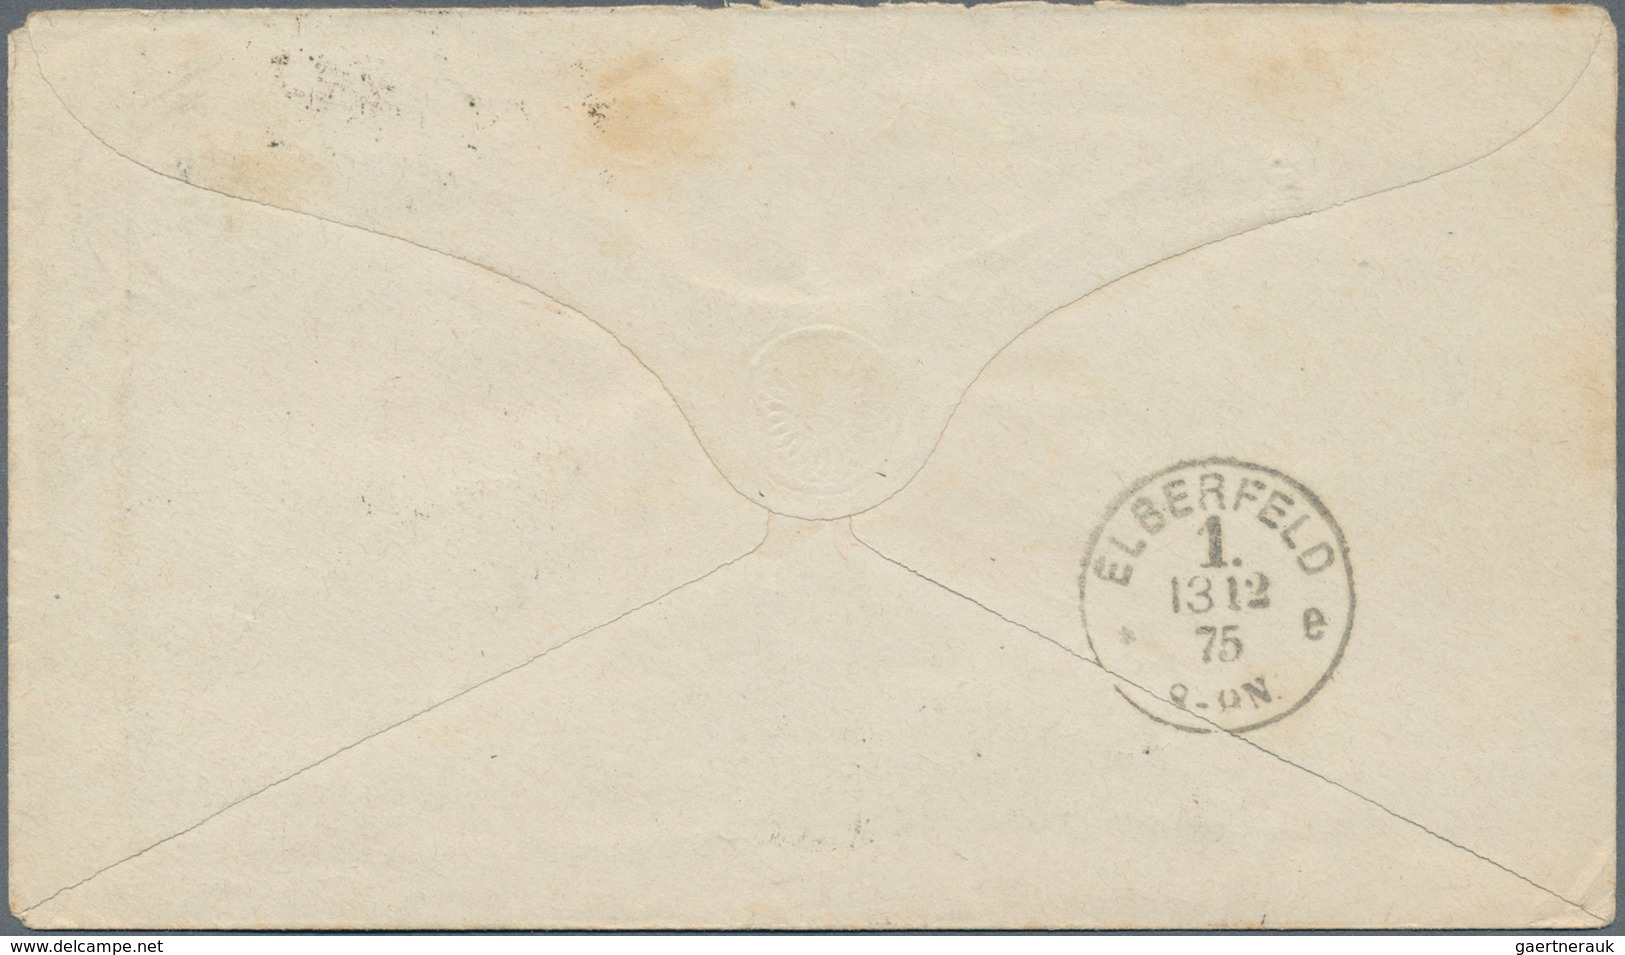 17873 Deutsches Reich - Brustschild: 1875, Zwei Brustschild-Marken, drei GA und ein Brief mit Reichspost-N